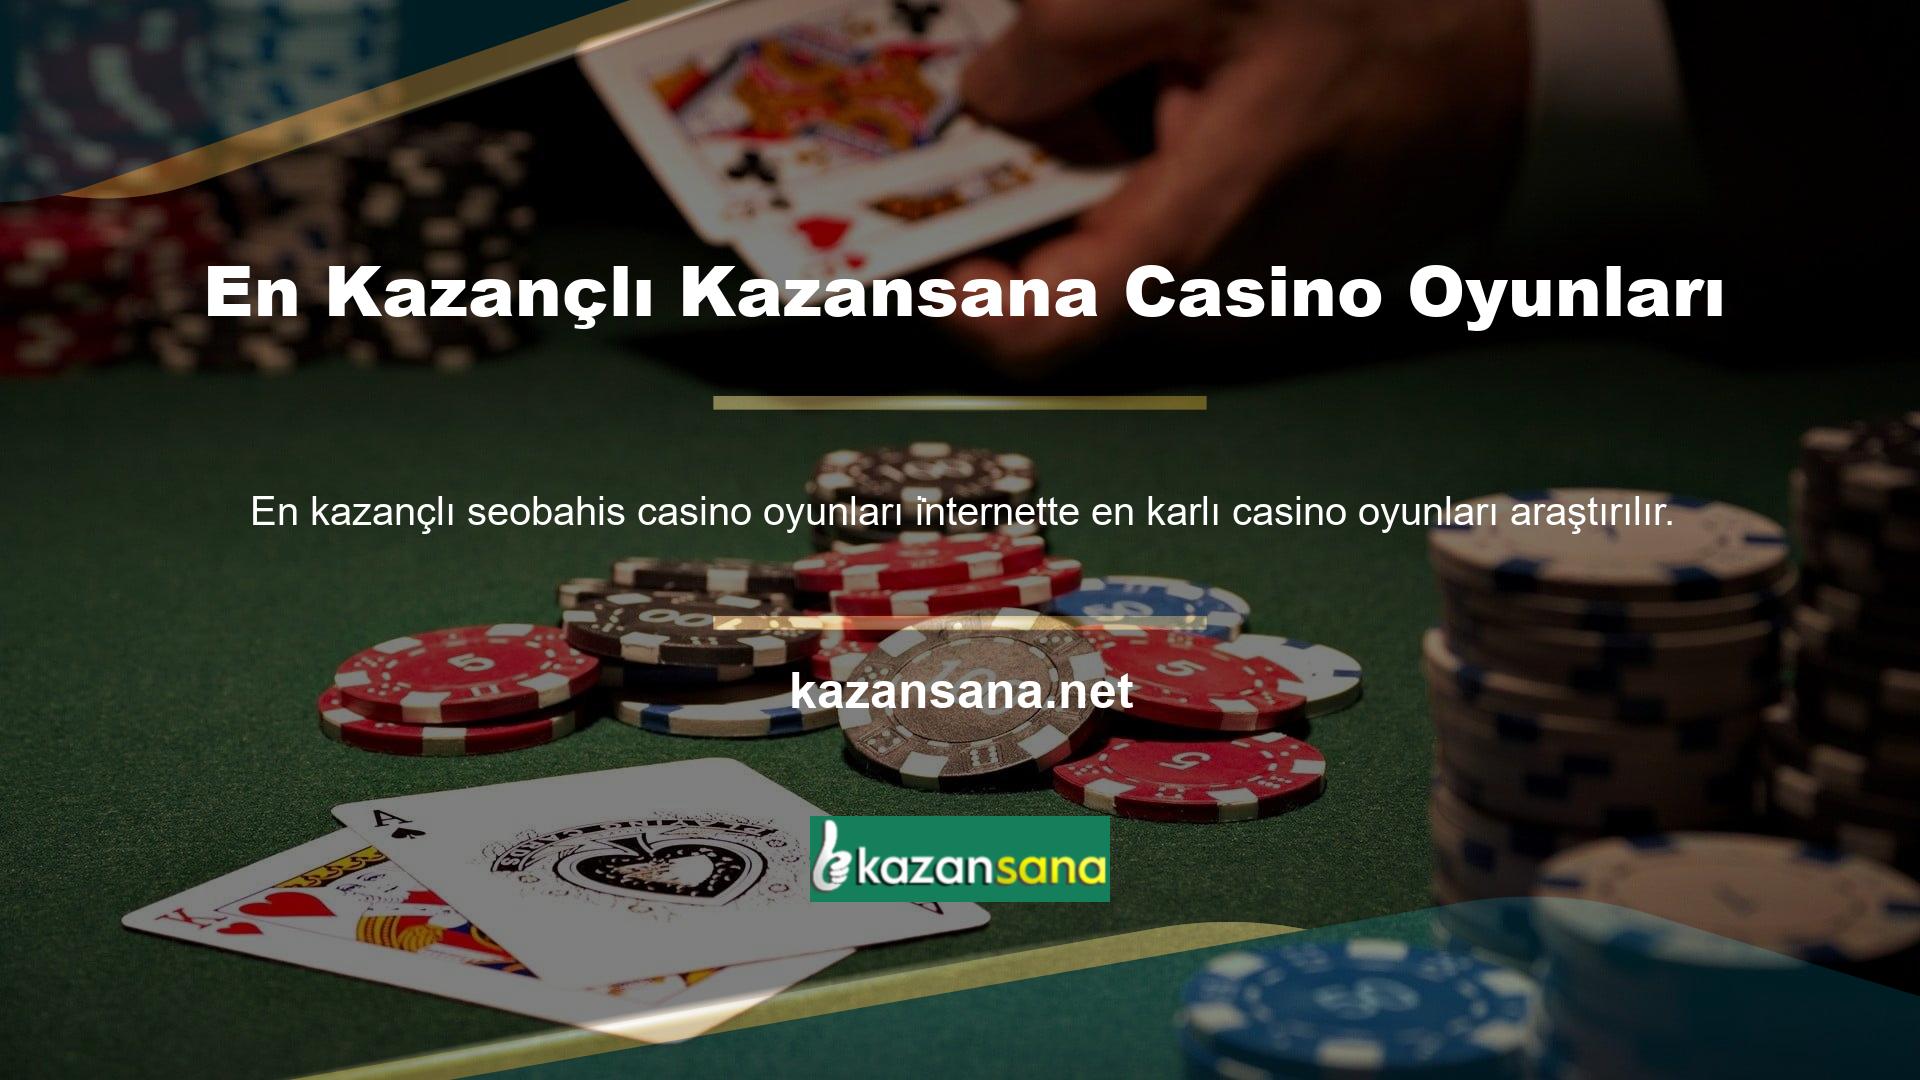 Ayrıca internette casino oyunları sunan birçok site bulunmaktadır